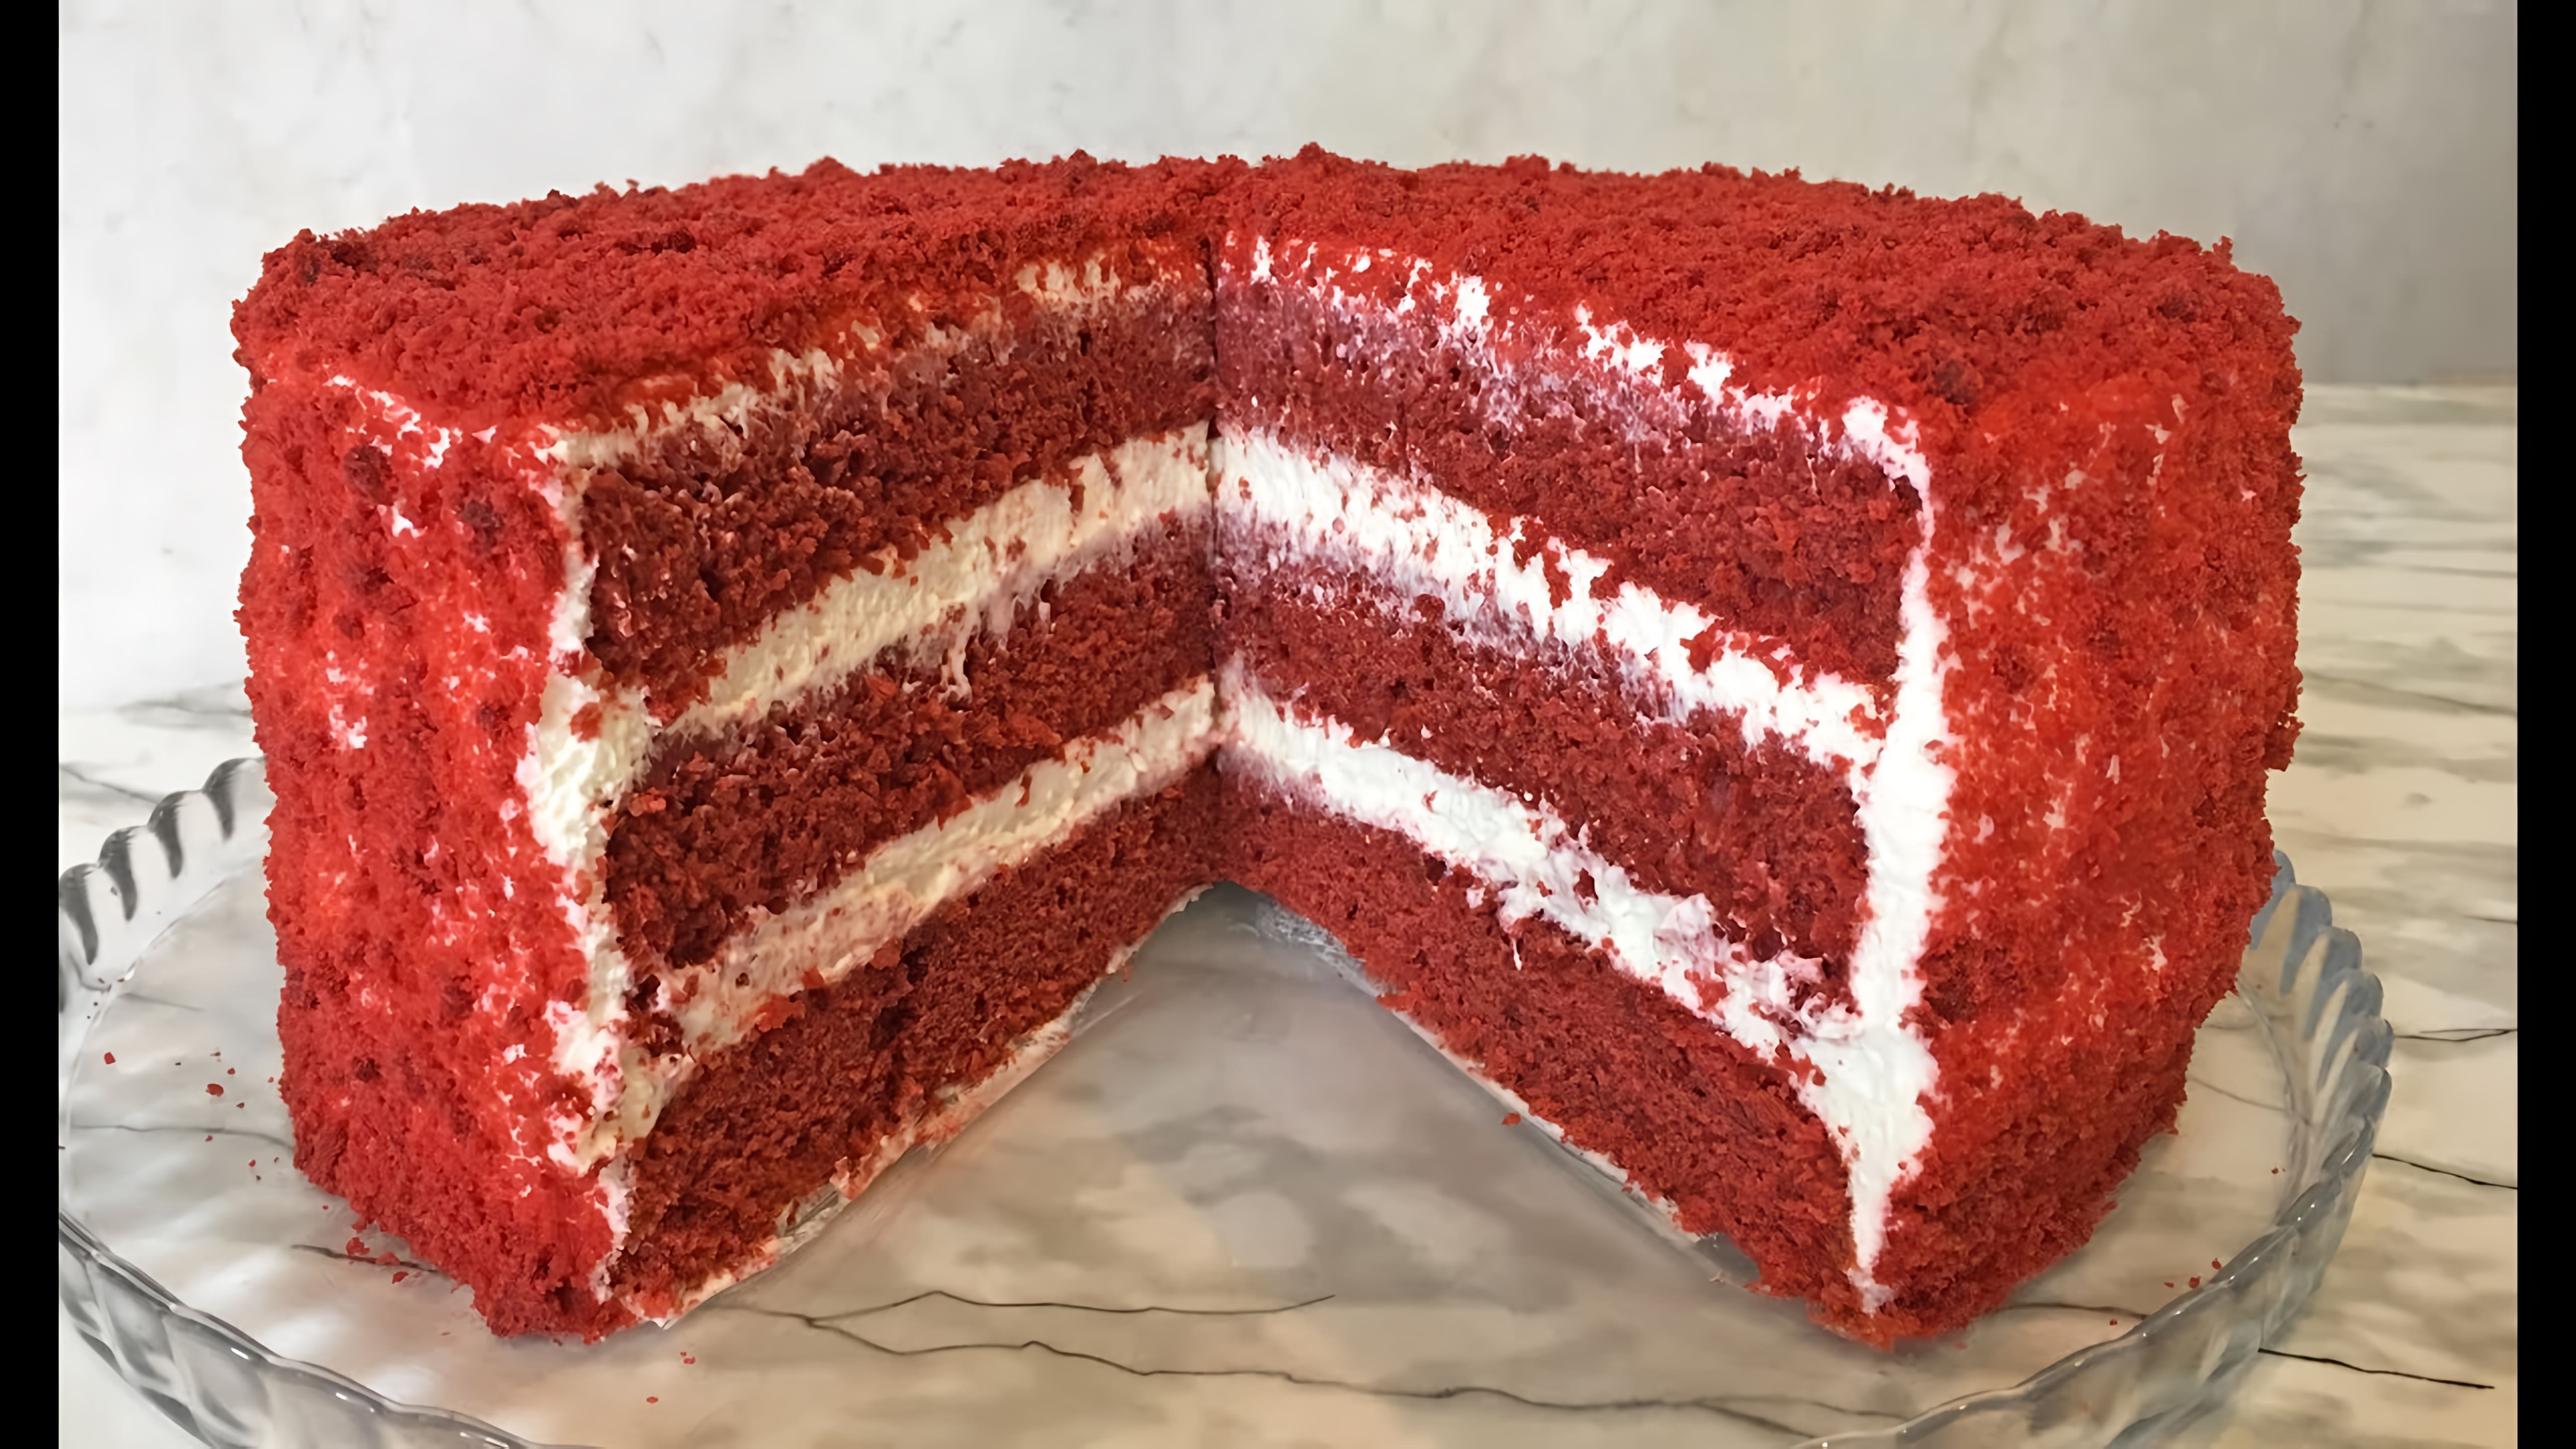 В этом видео демонстрируется процесс приготовления торта "Красный бархат"